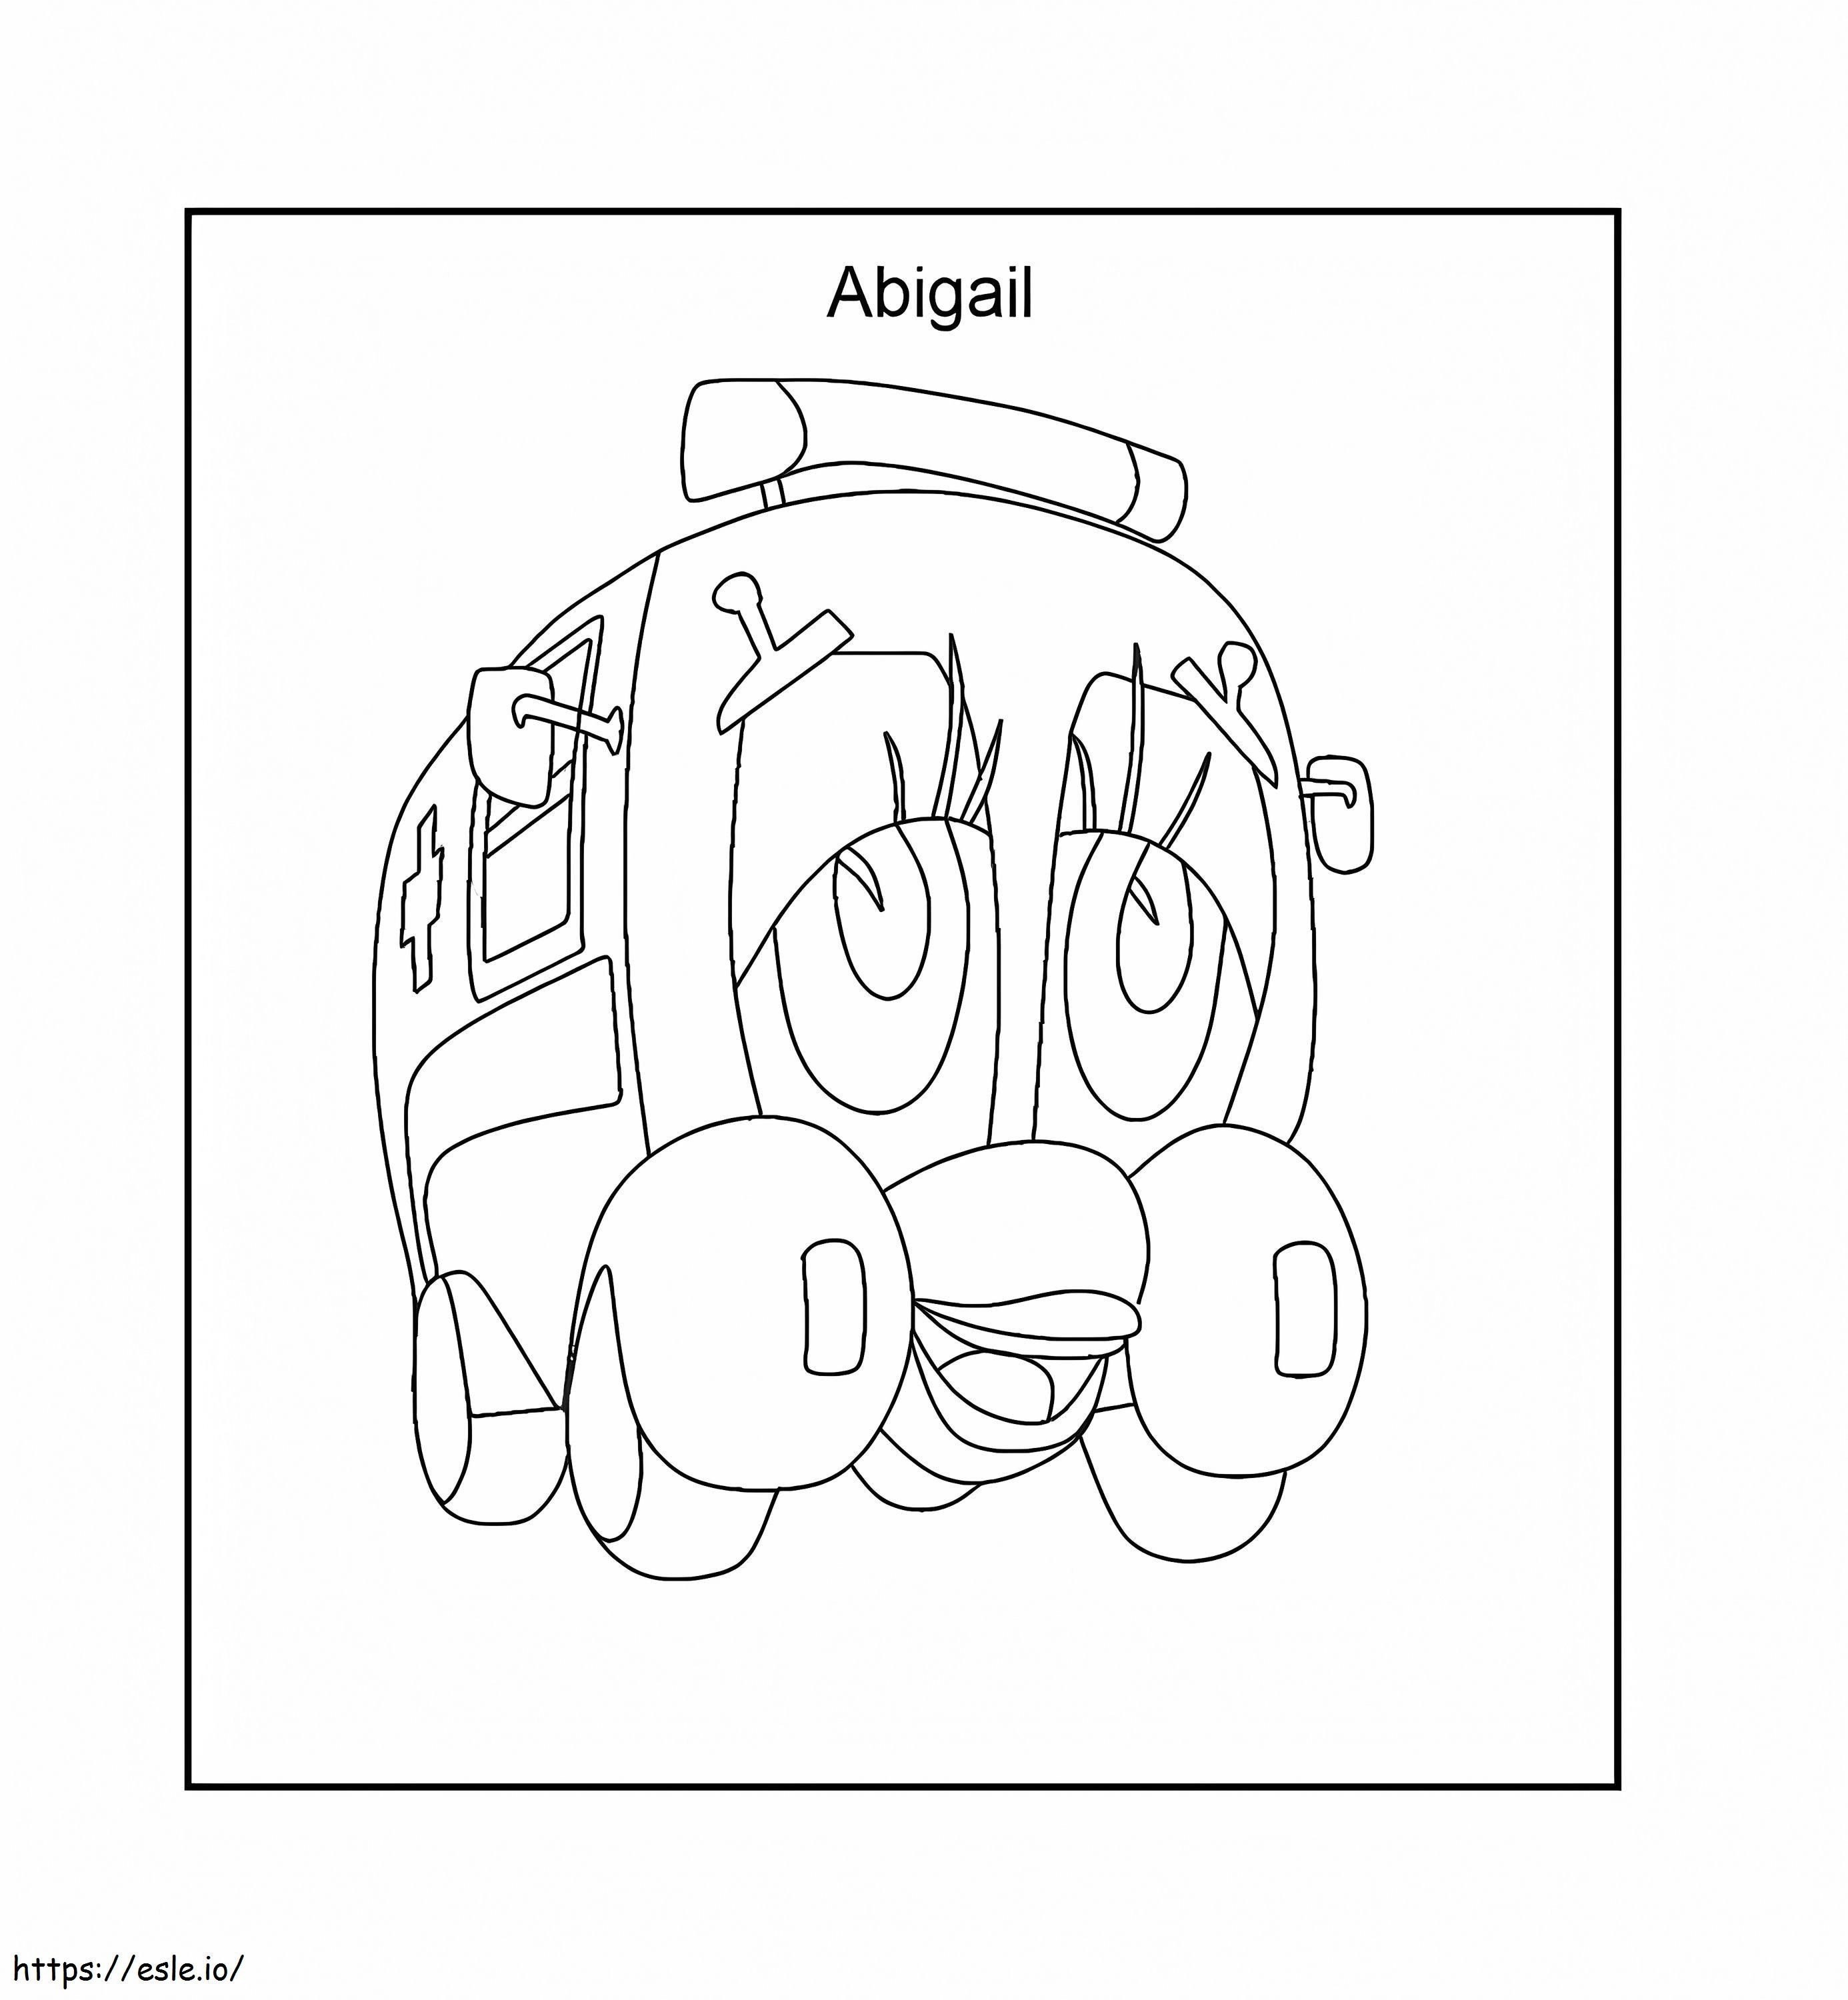 Ambulanza Abigail da colorare